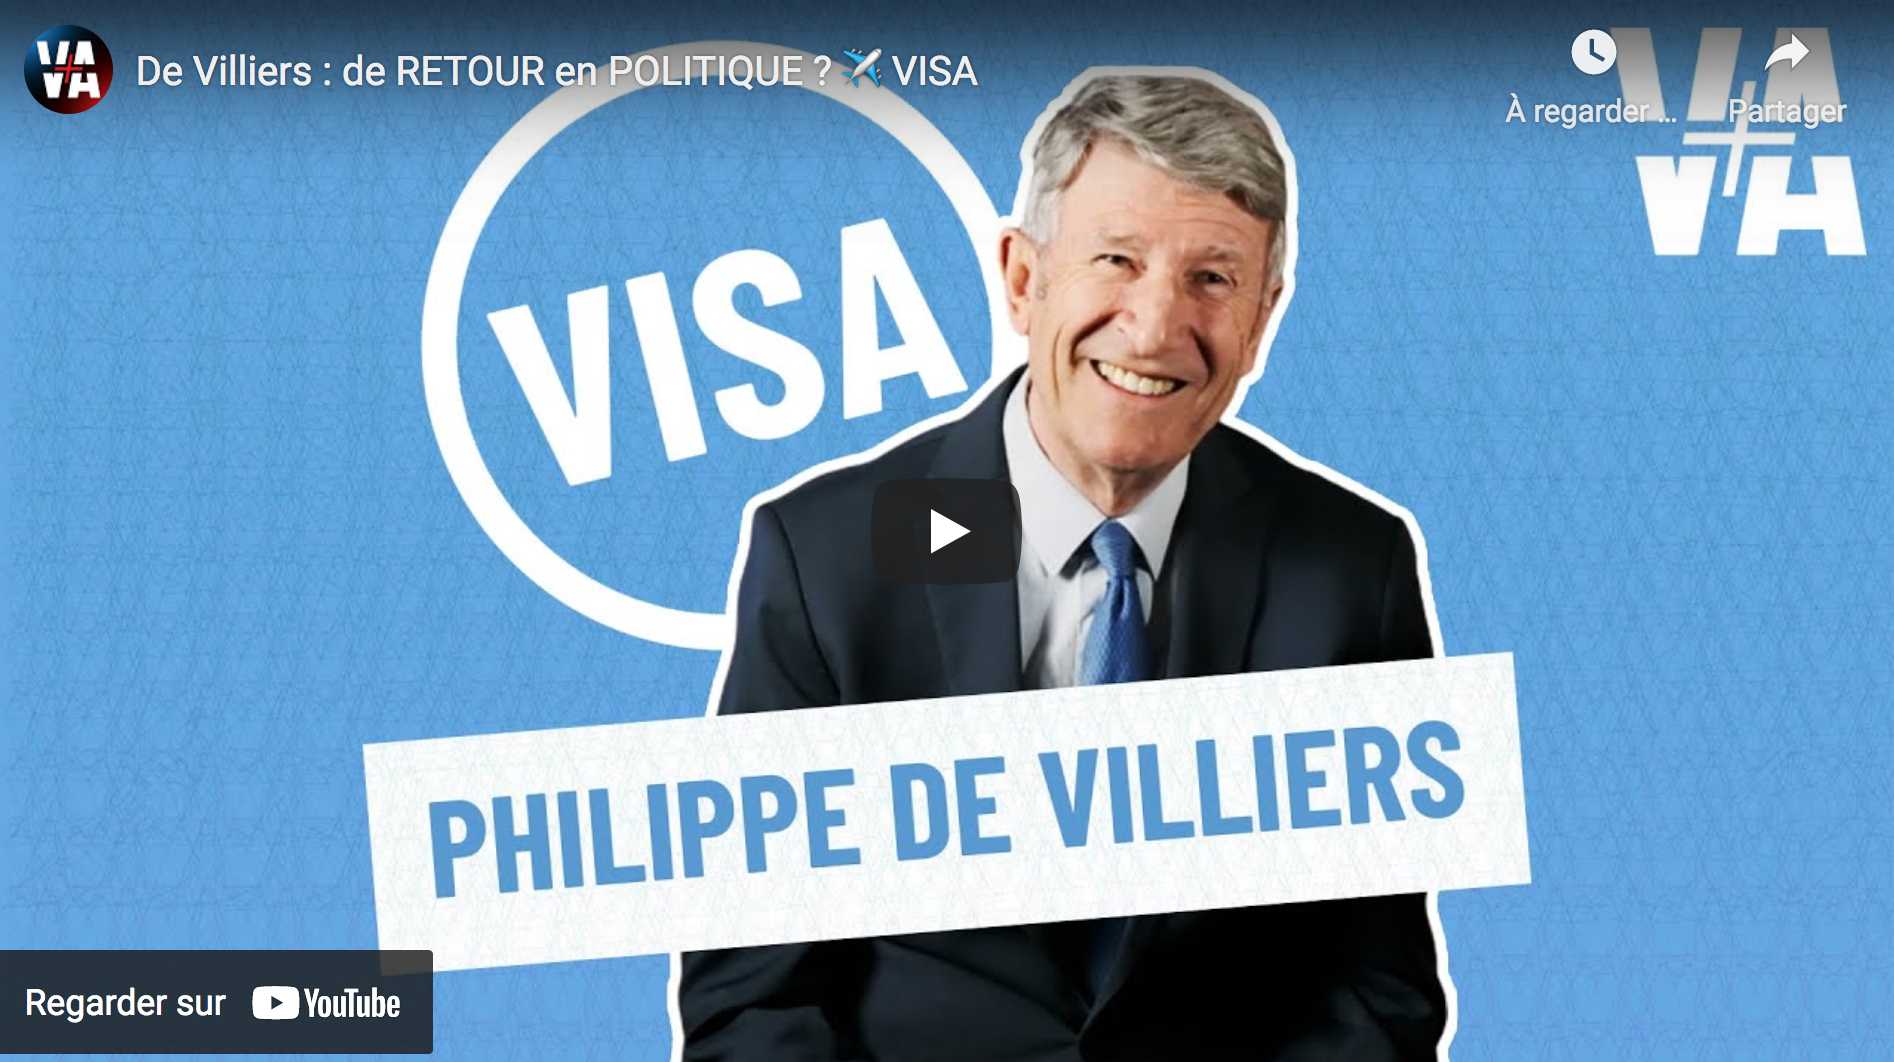 Philippe de Villiers : de retour en politique ? (VIDÉO)